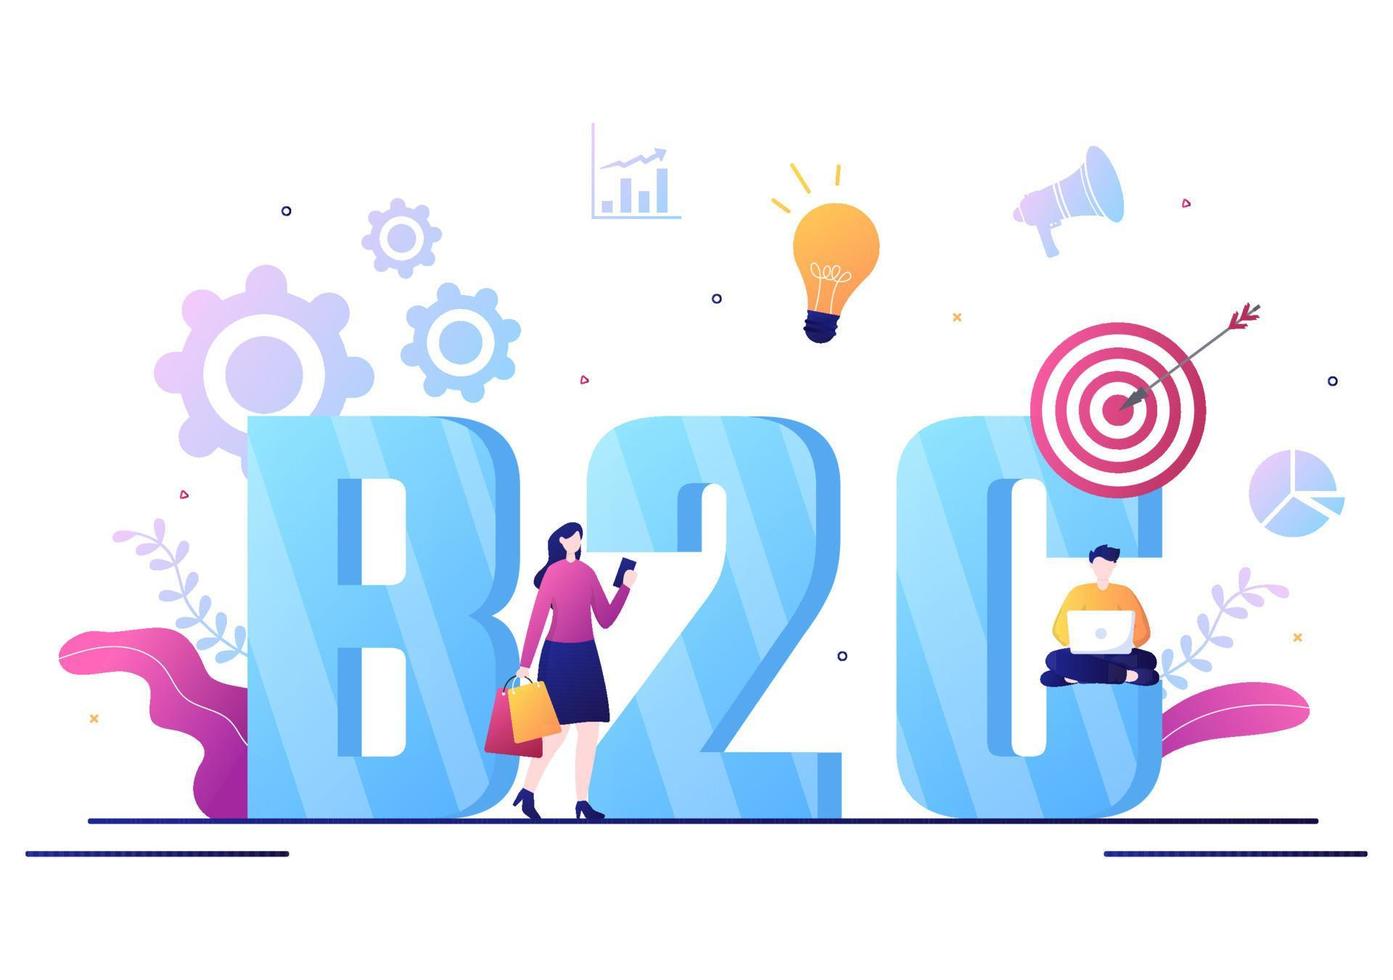 b2c ou business to consumer marketing vector illustration. empresários e clientes definem estratégia, vendas, comércio alcançam a transação acordada